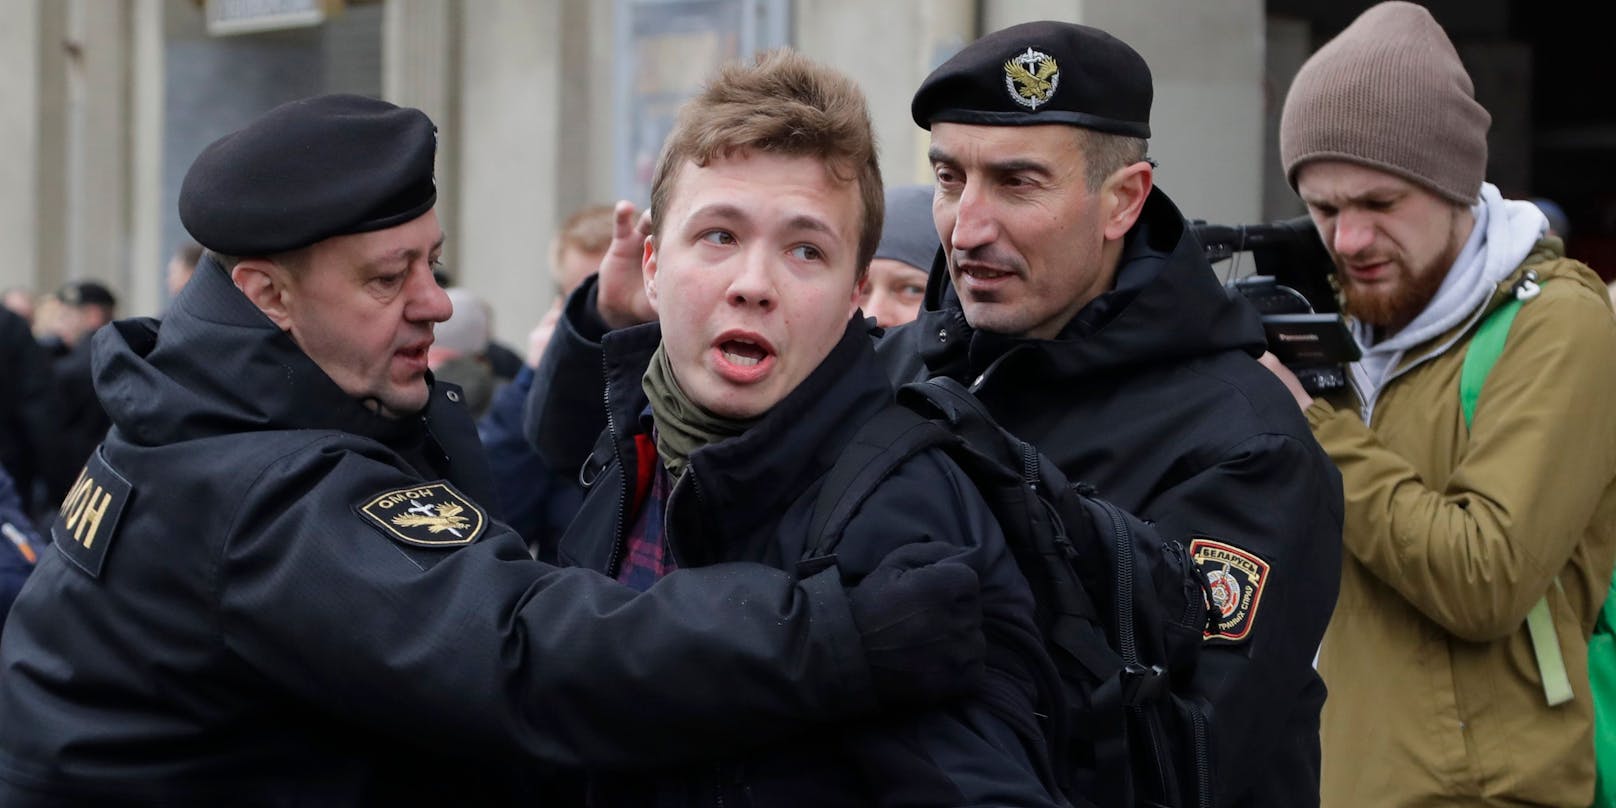 Roman Protassewitsch wird bei einer Protestaktion in Minsk festgenommen. (Archivbild, 2017)